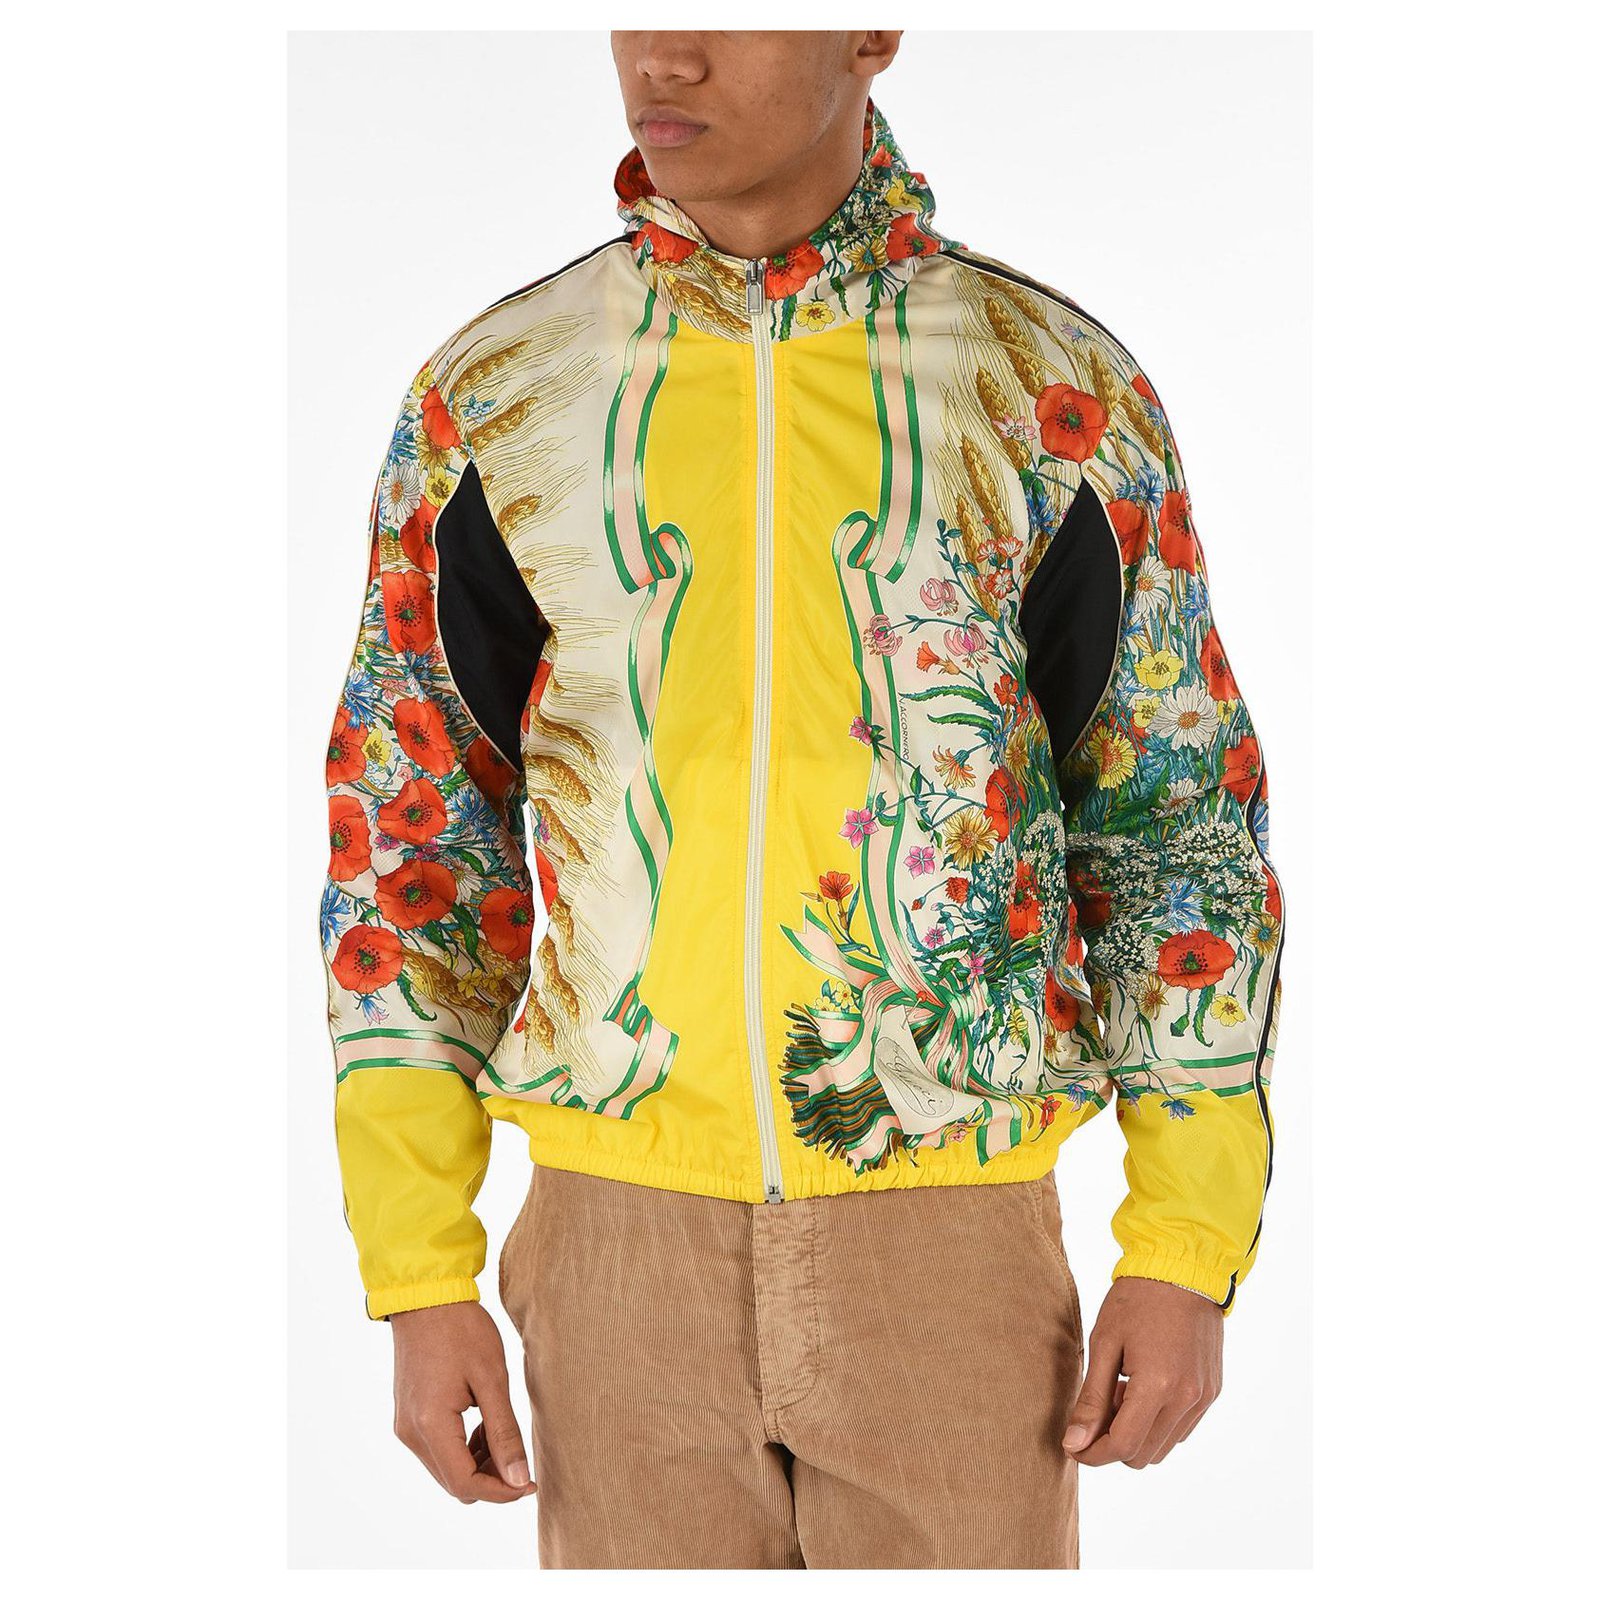 Gucci jackets & coats for Men